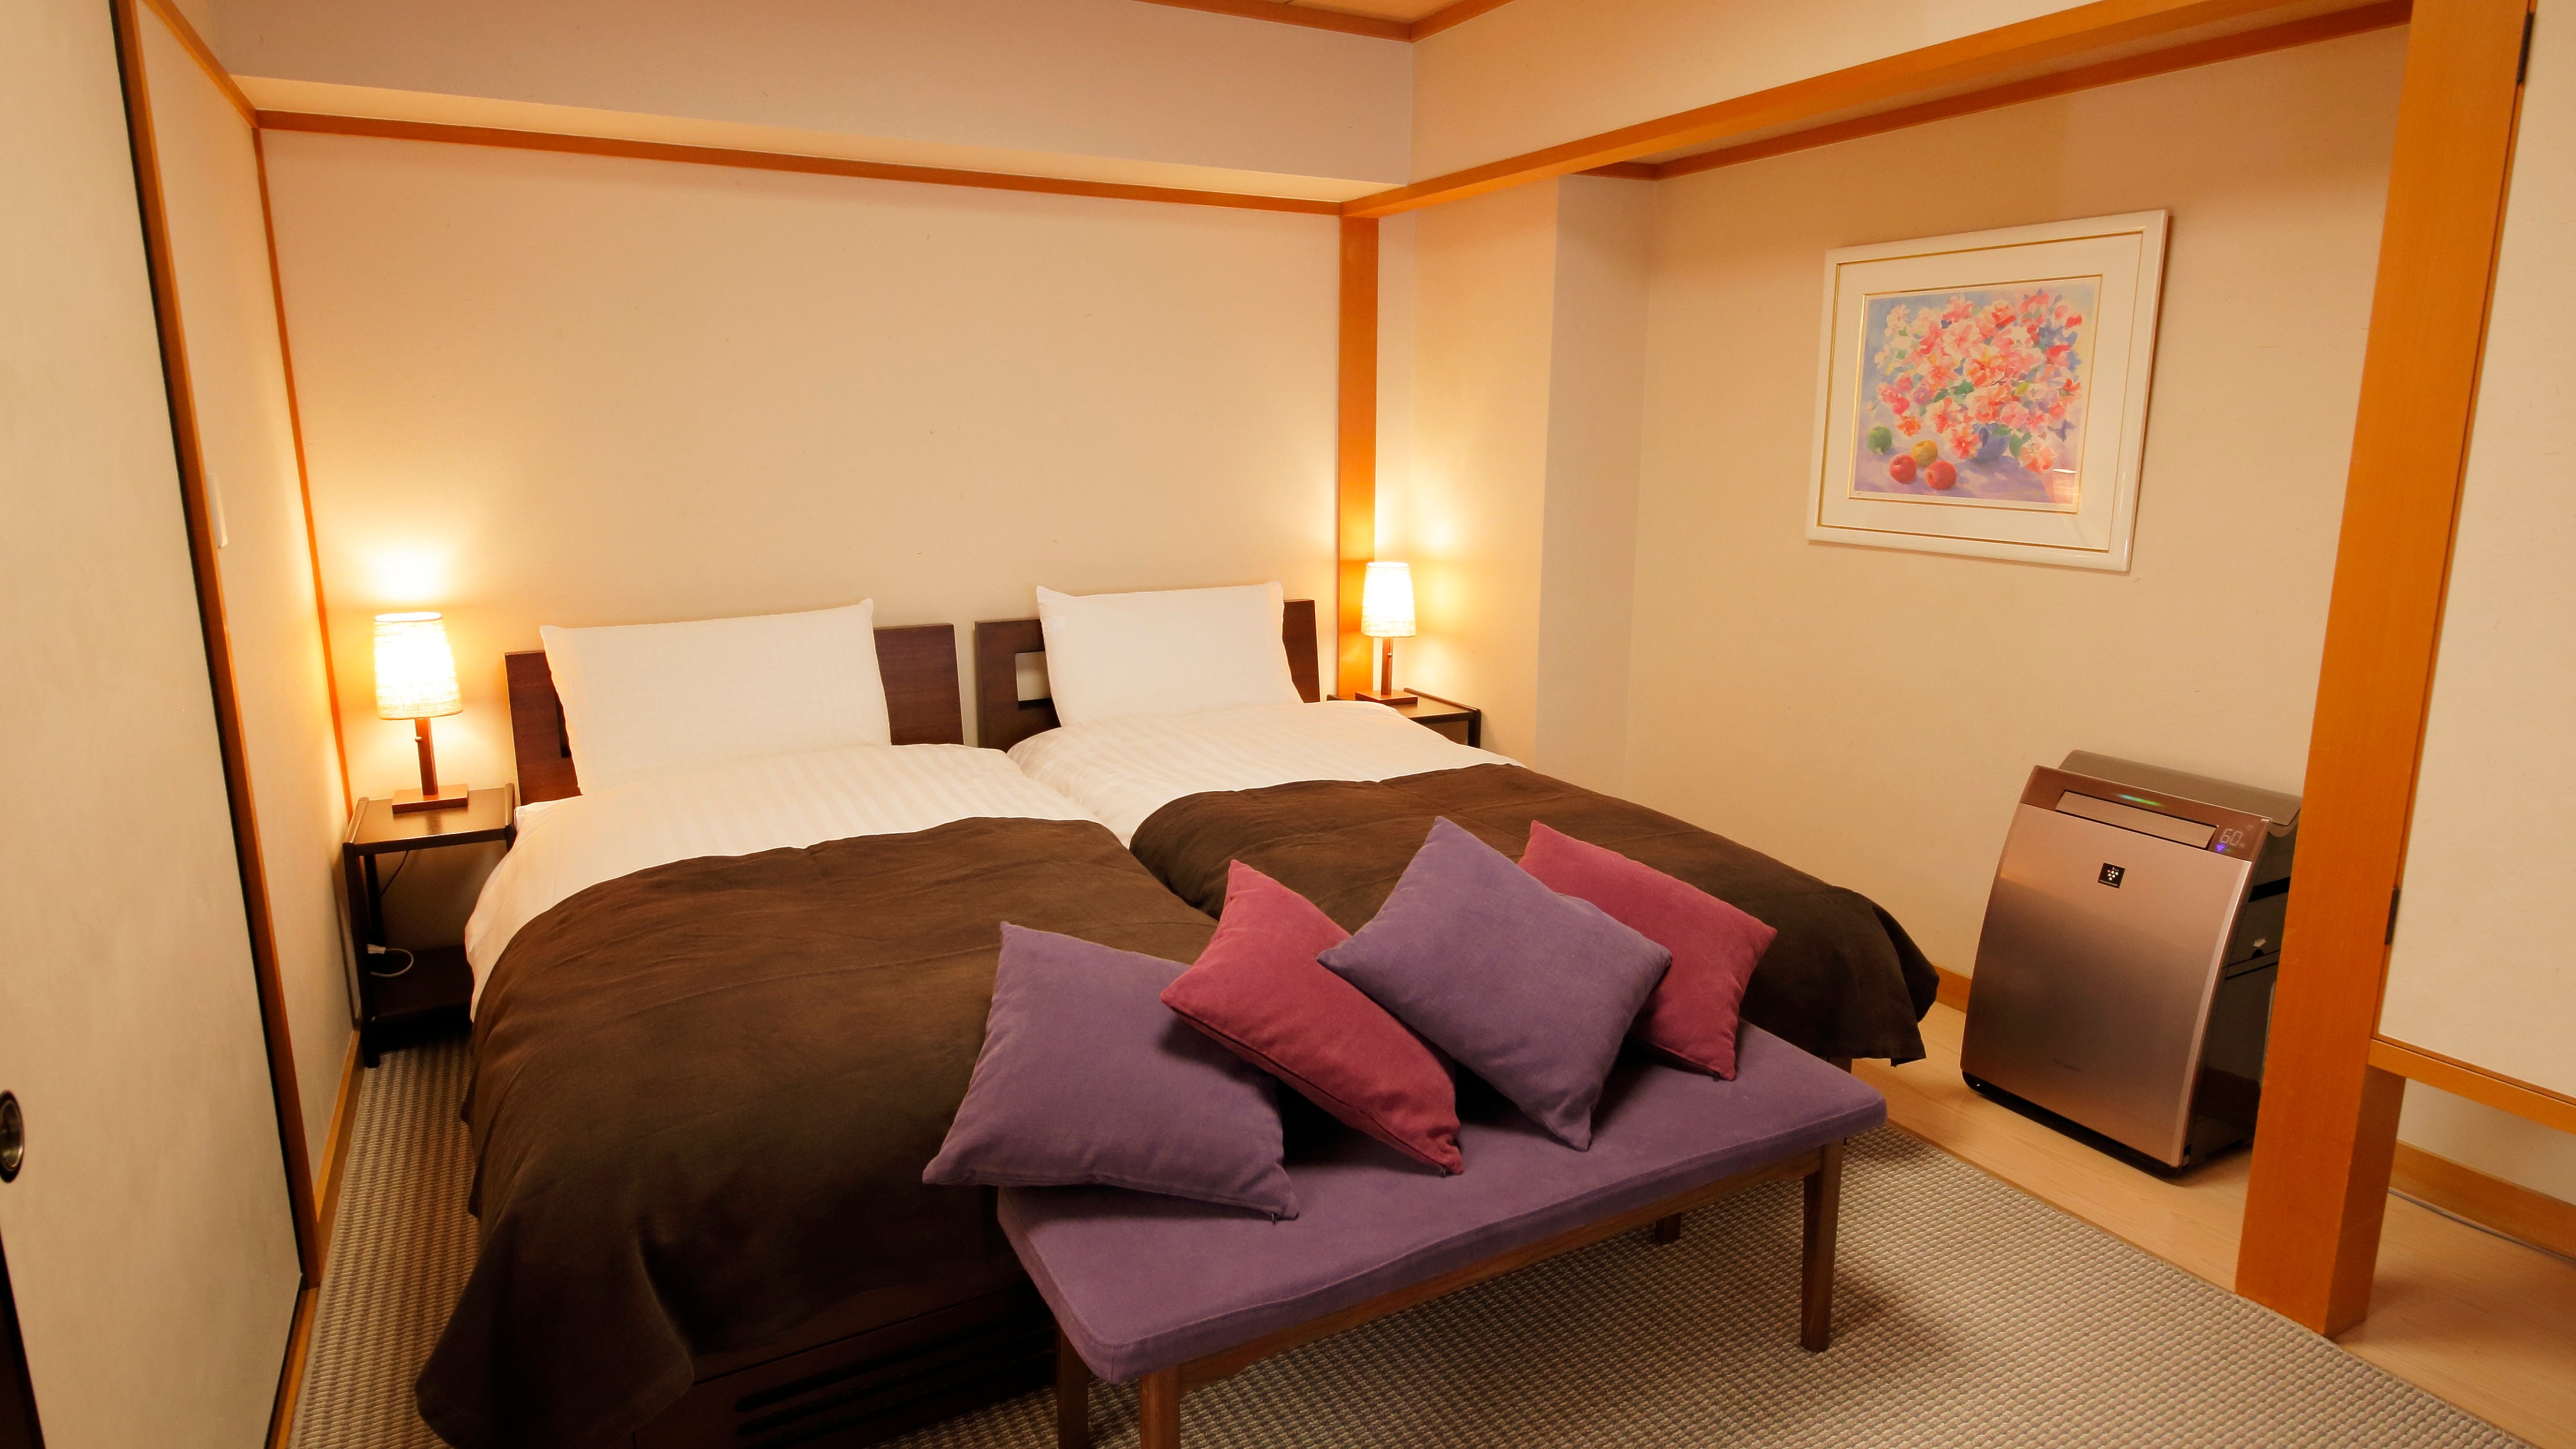 Kamar khusus lantai 2 Kamar tidur tipe Jepang dan Barat (gambar)